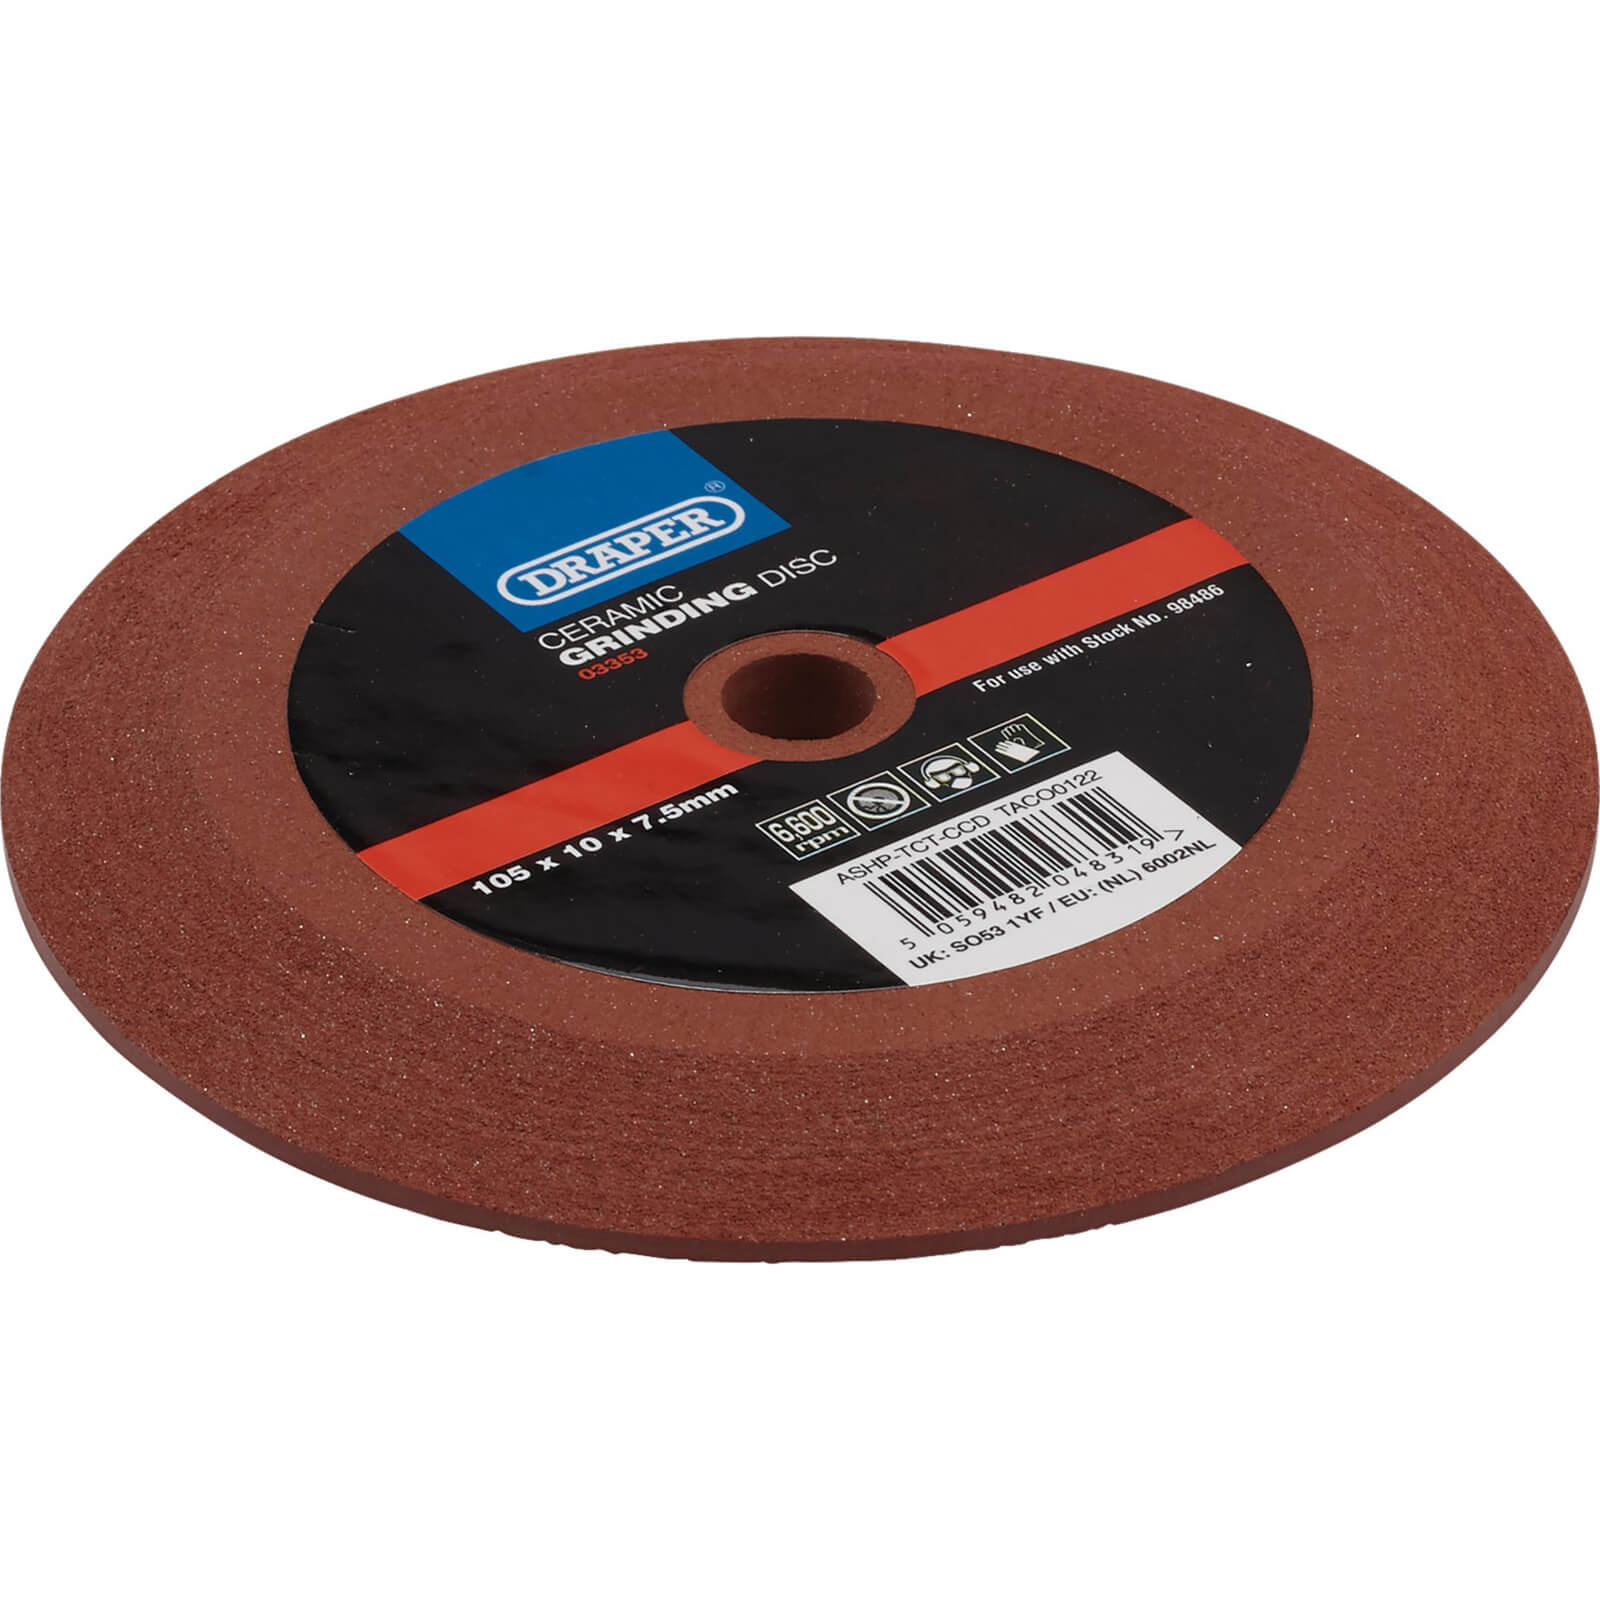 Image of Draper Ceramic Grinding Disc for 98486 Circular Saw Blade Sharpener